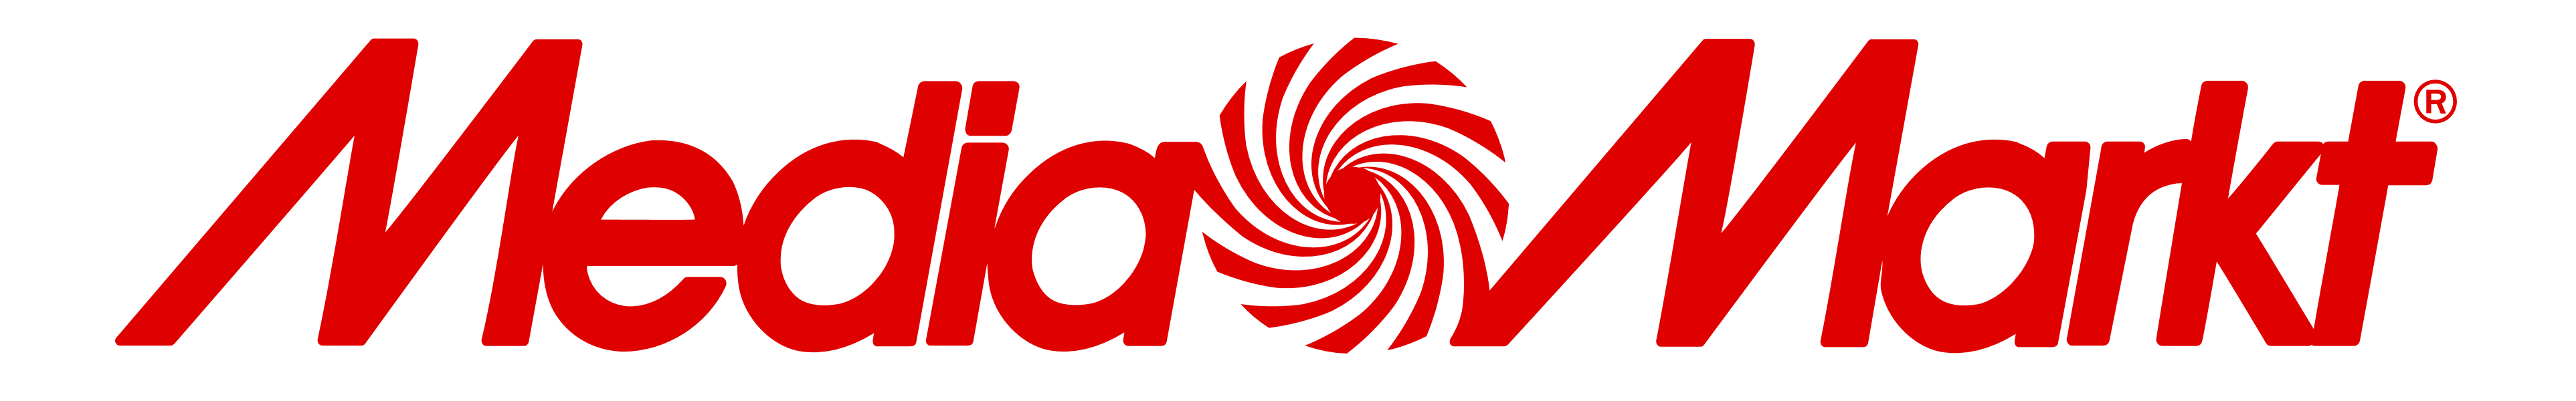 Media Markt logo, logotype